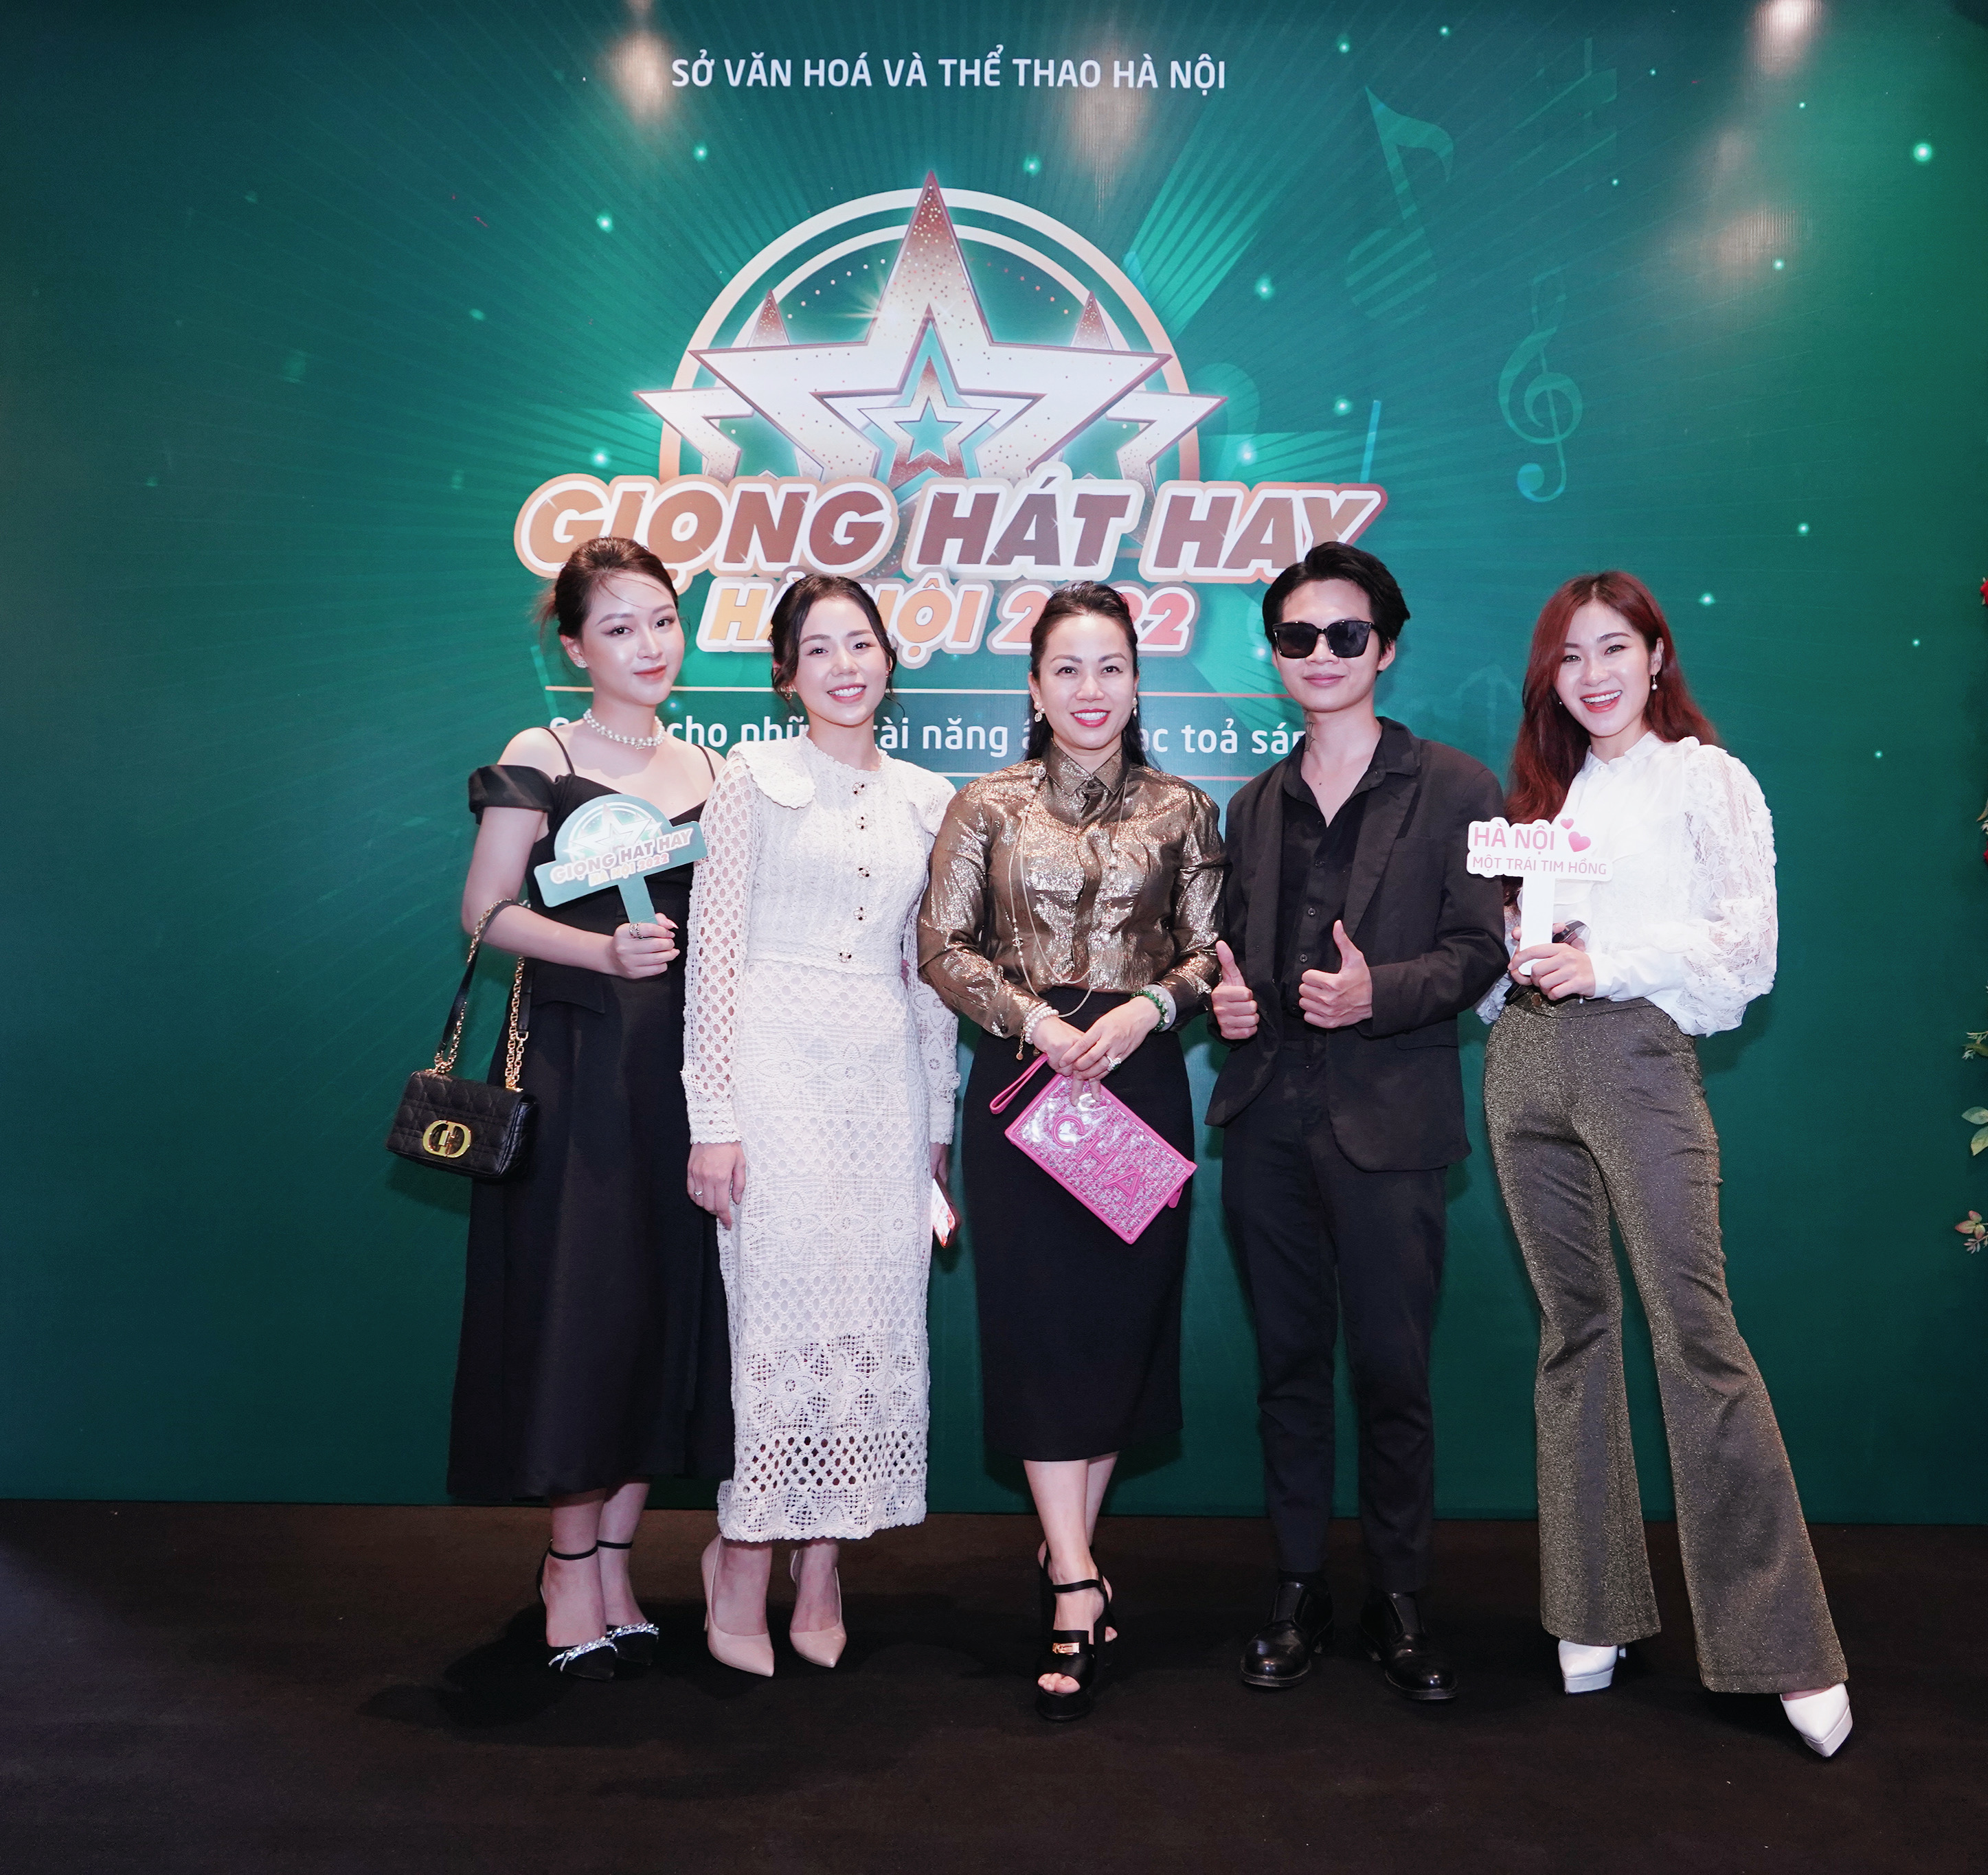 Diva Hồng Nhung góp mặt trong đêm chung kết Giọng hát hay Hà Nội 2022